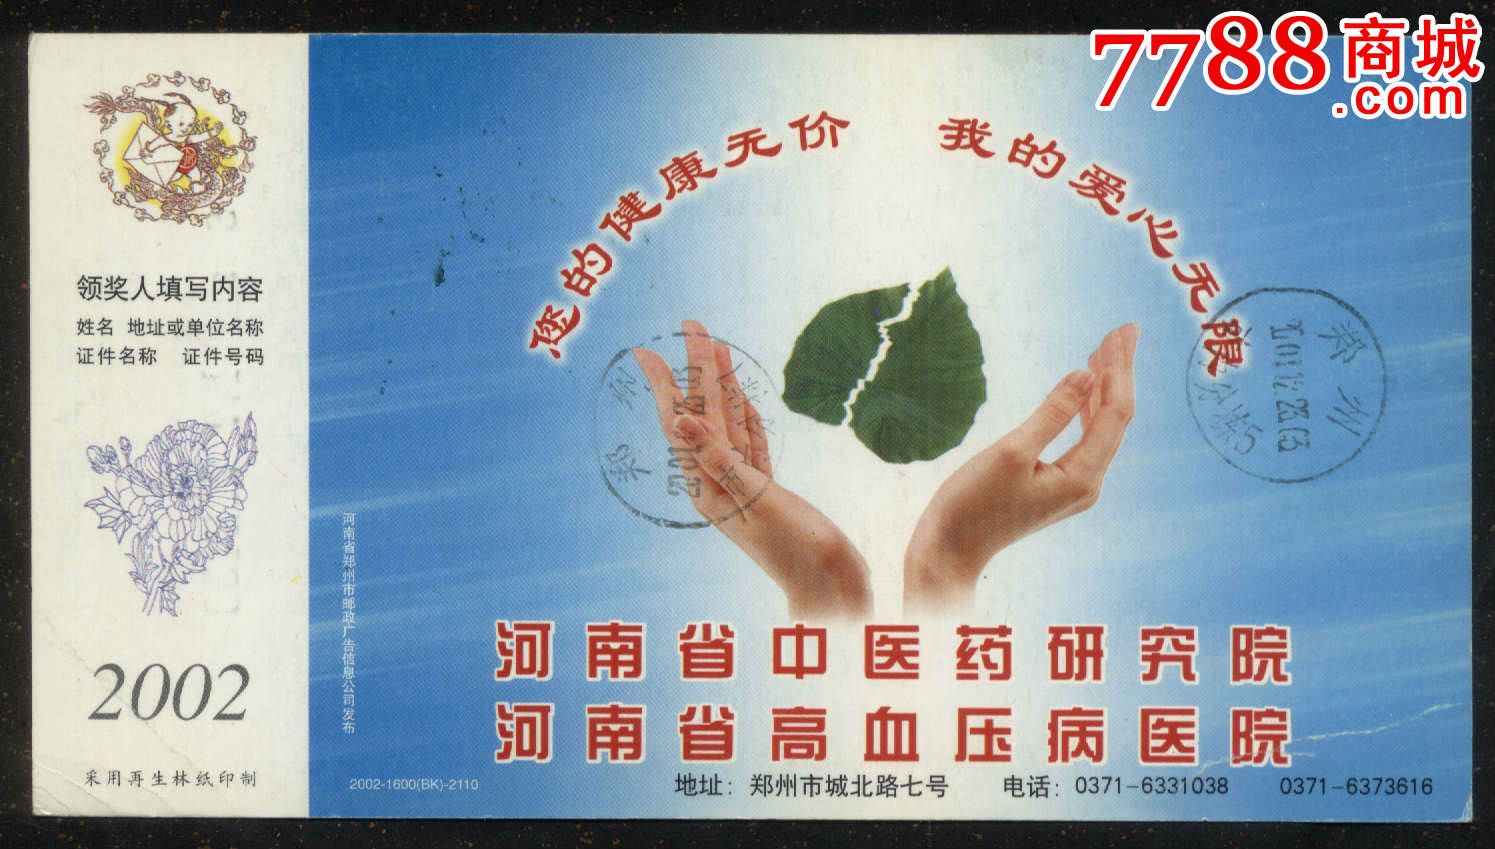 2002年河南中医药研究院贺年实寄片-价格:5元